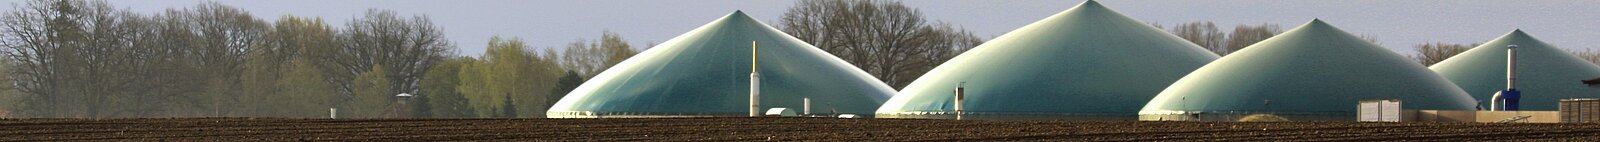 Hauben von vier installierten Biogasanlagen